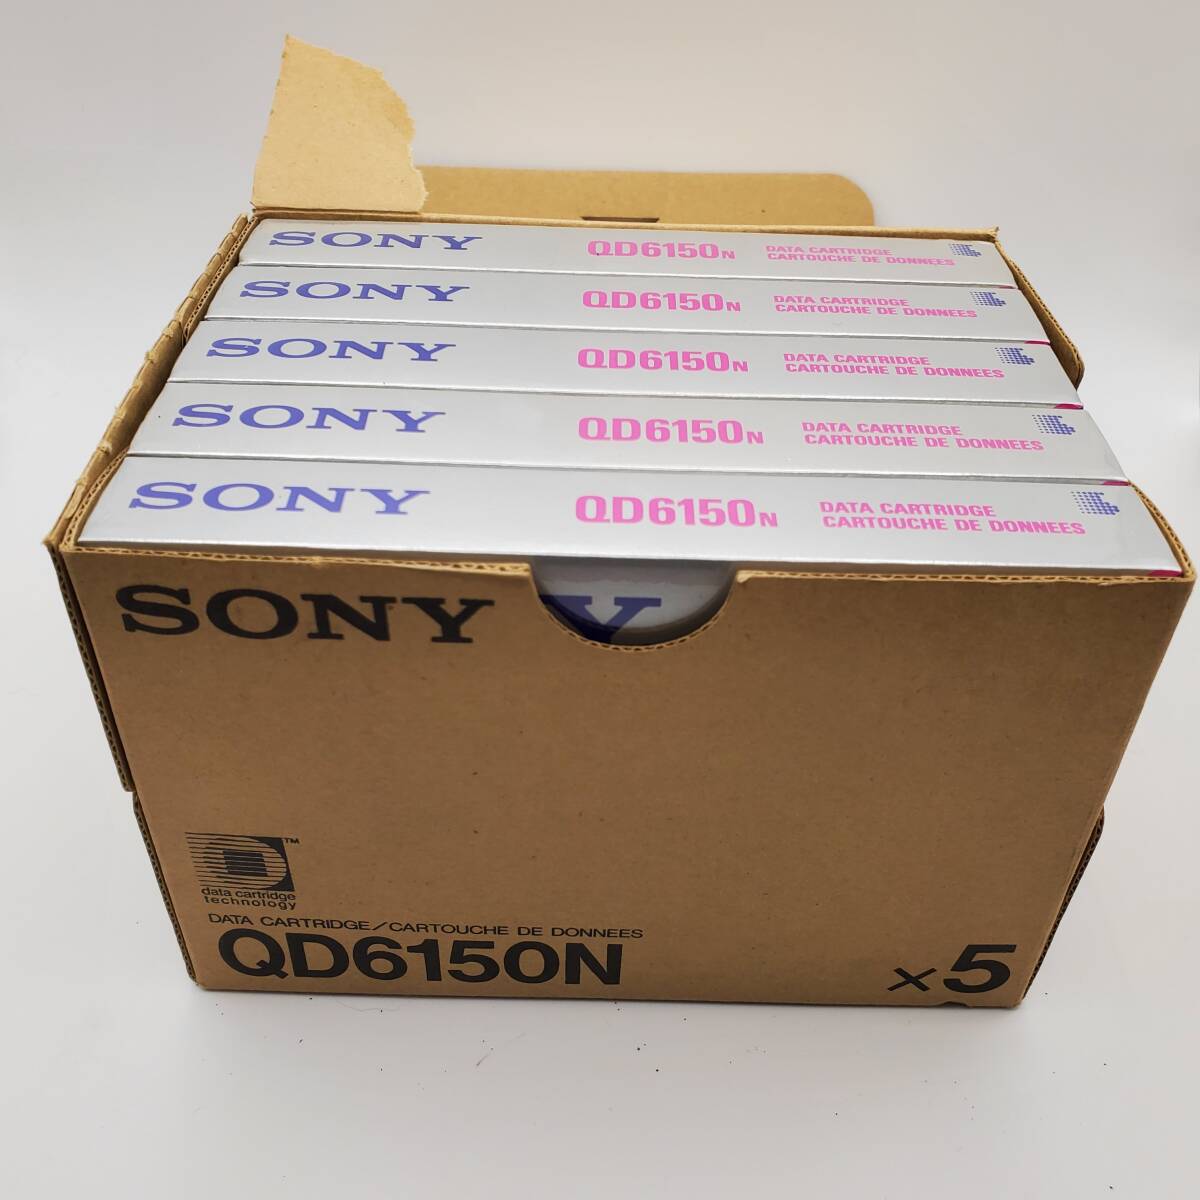  новый товар нераспечатанный Sony QD6150N данные картридж 150MB 189m 1 шт. комплект 